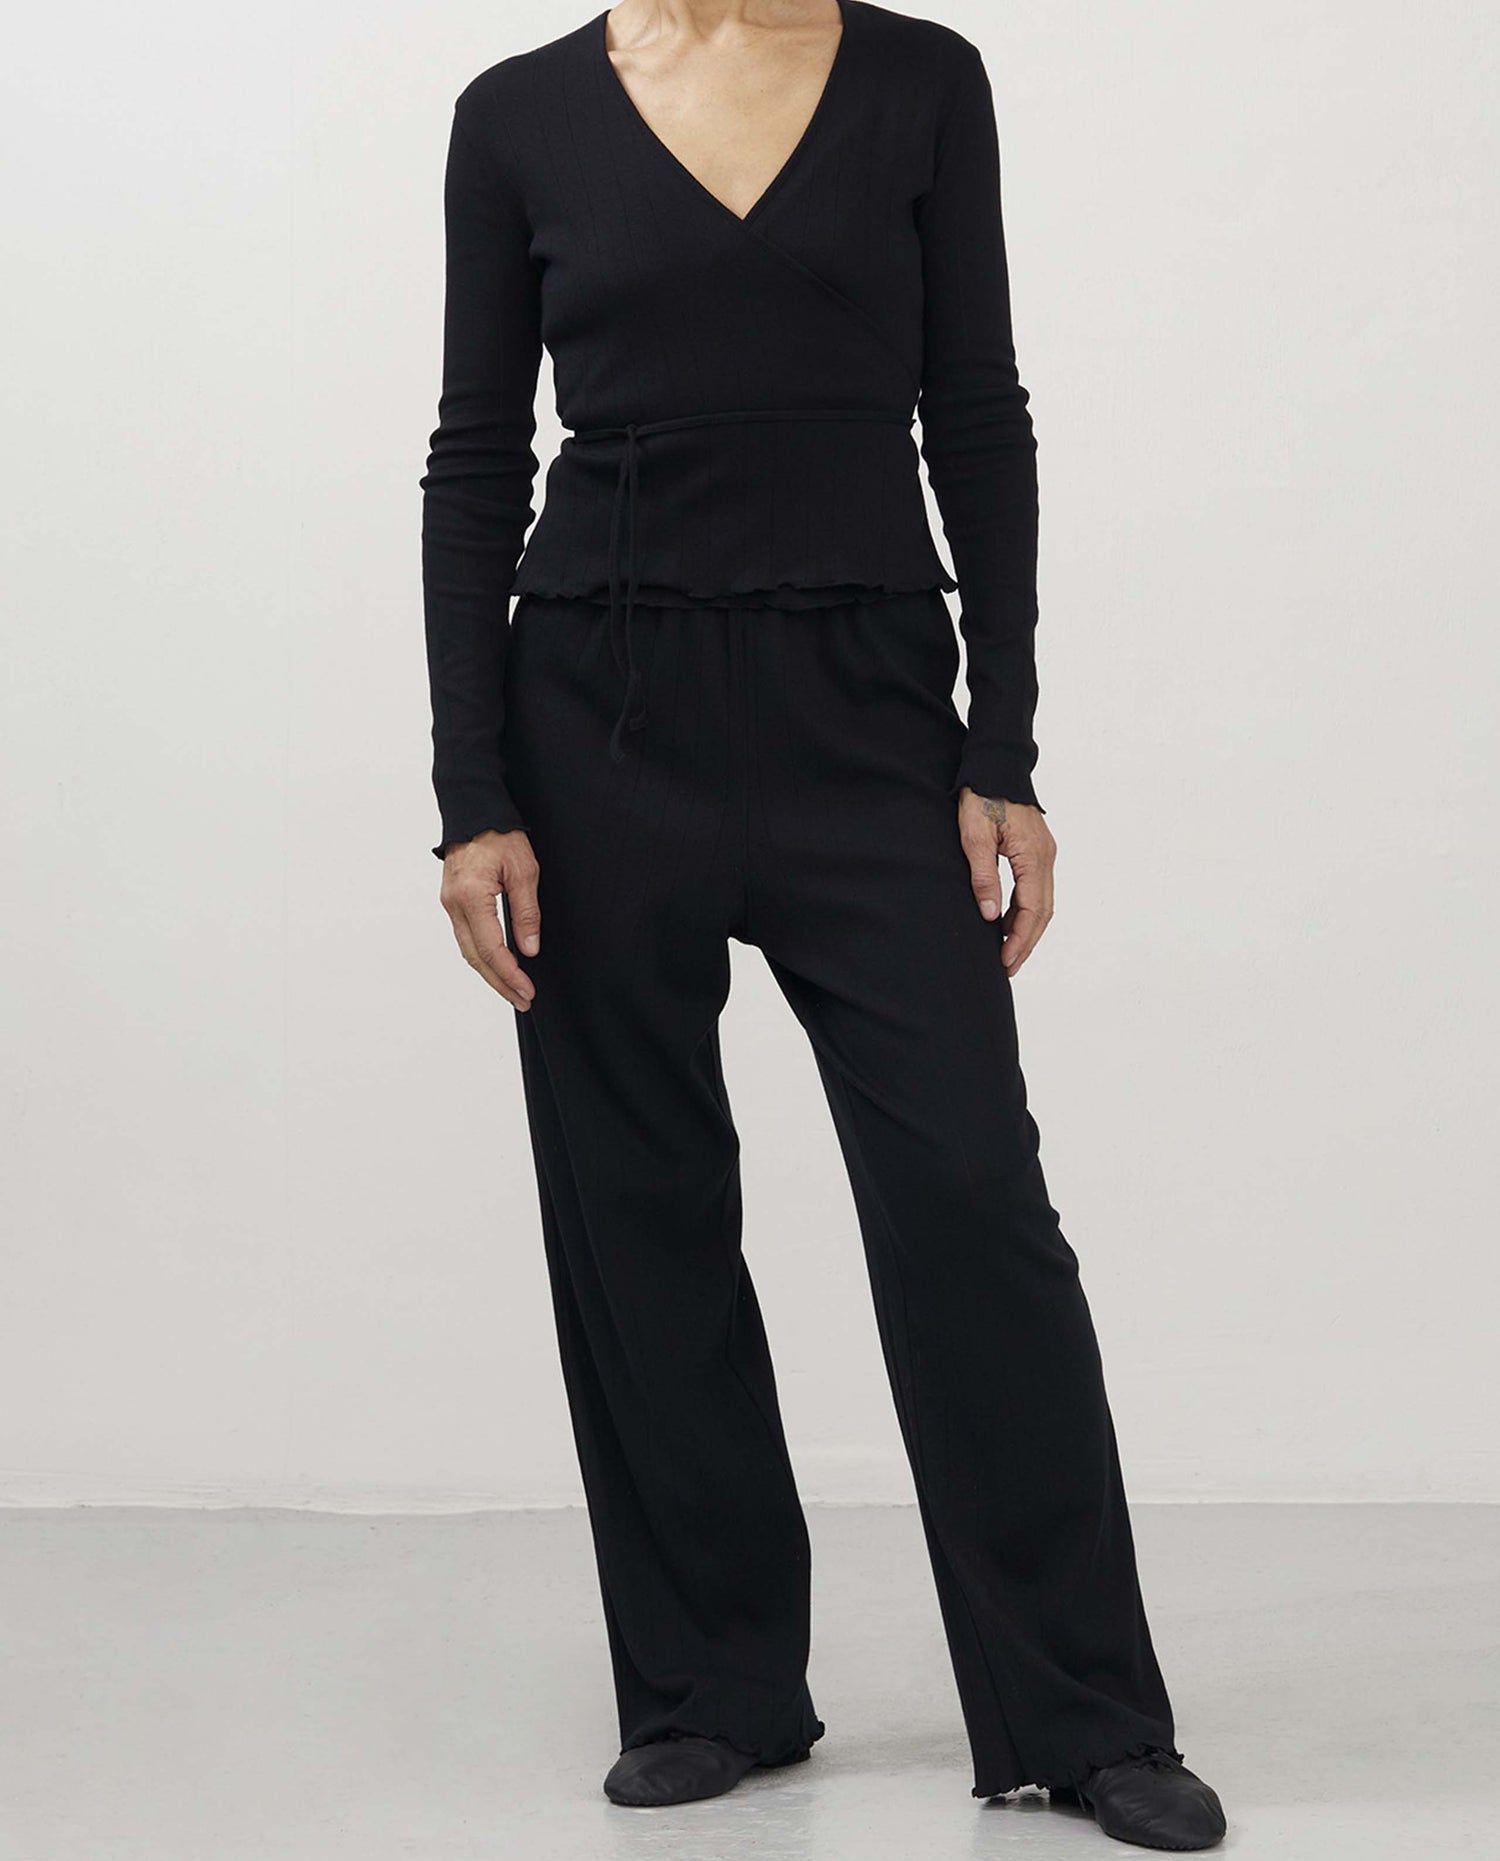 marché commun organic basics pantalon pointelle coton biologique homewear loungewear femme noir